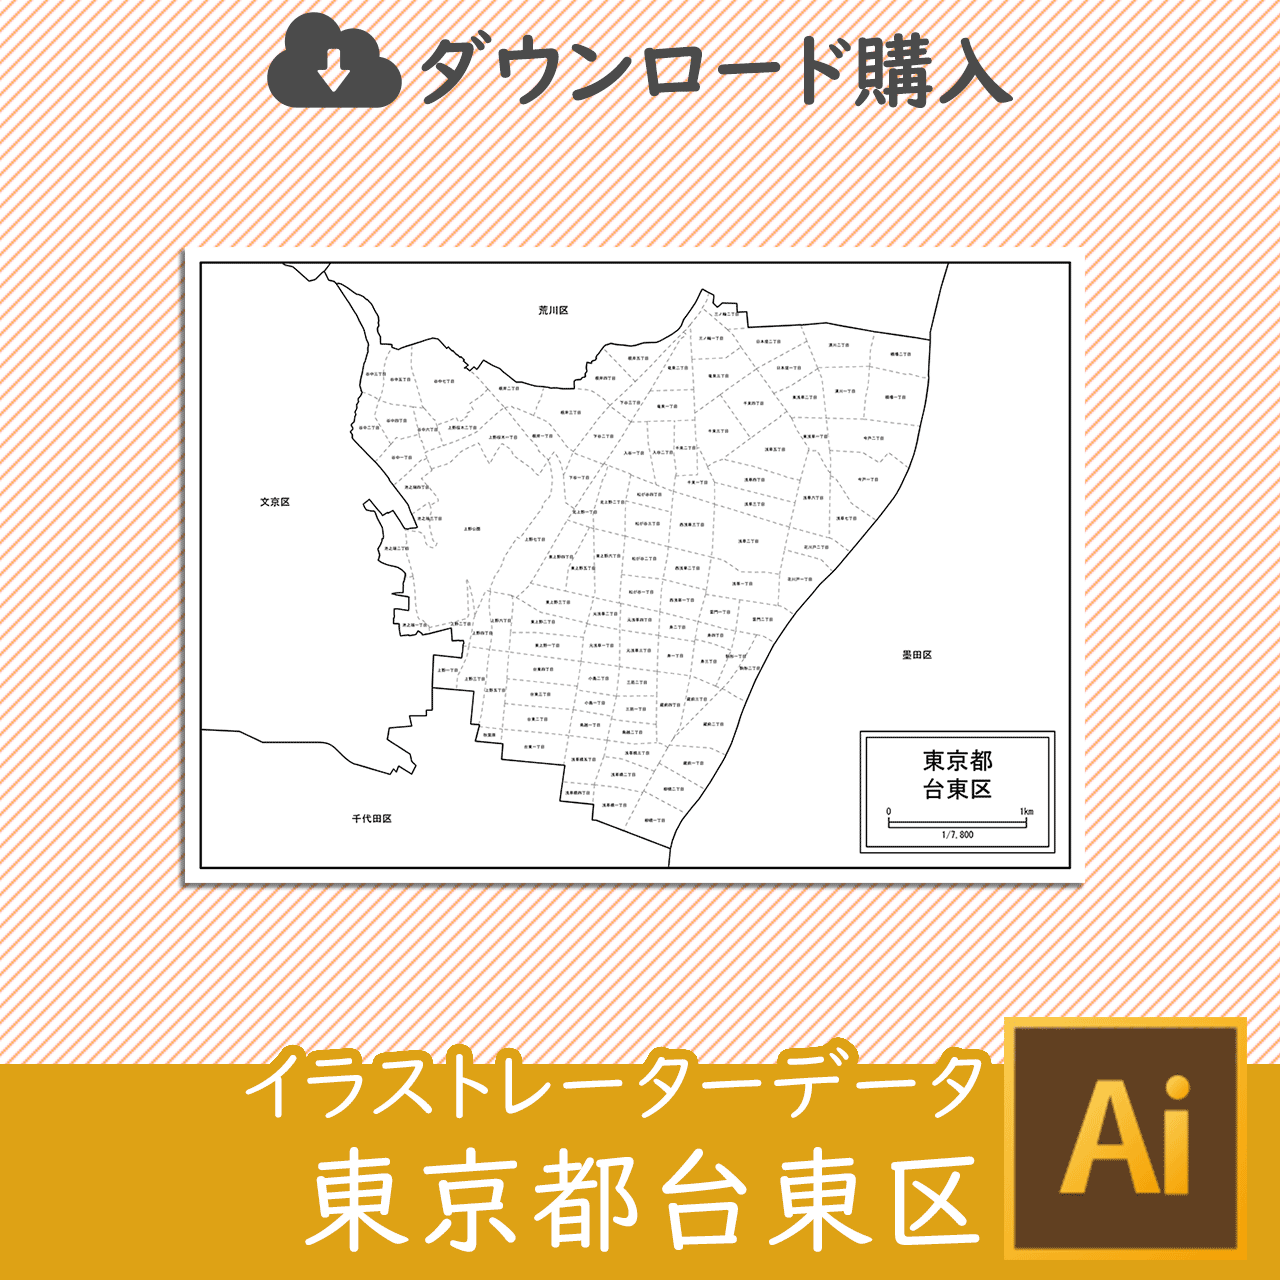 東京都台東区のaiデータのサムネイル画像